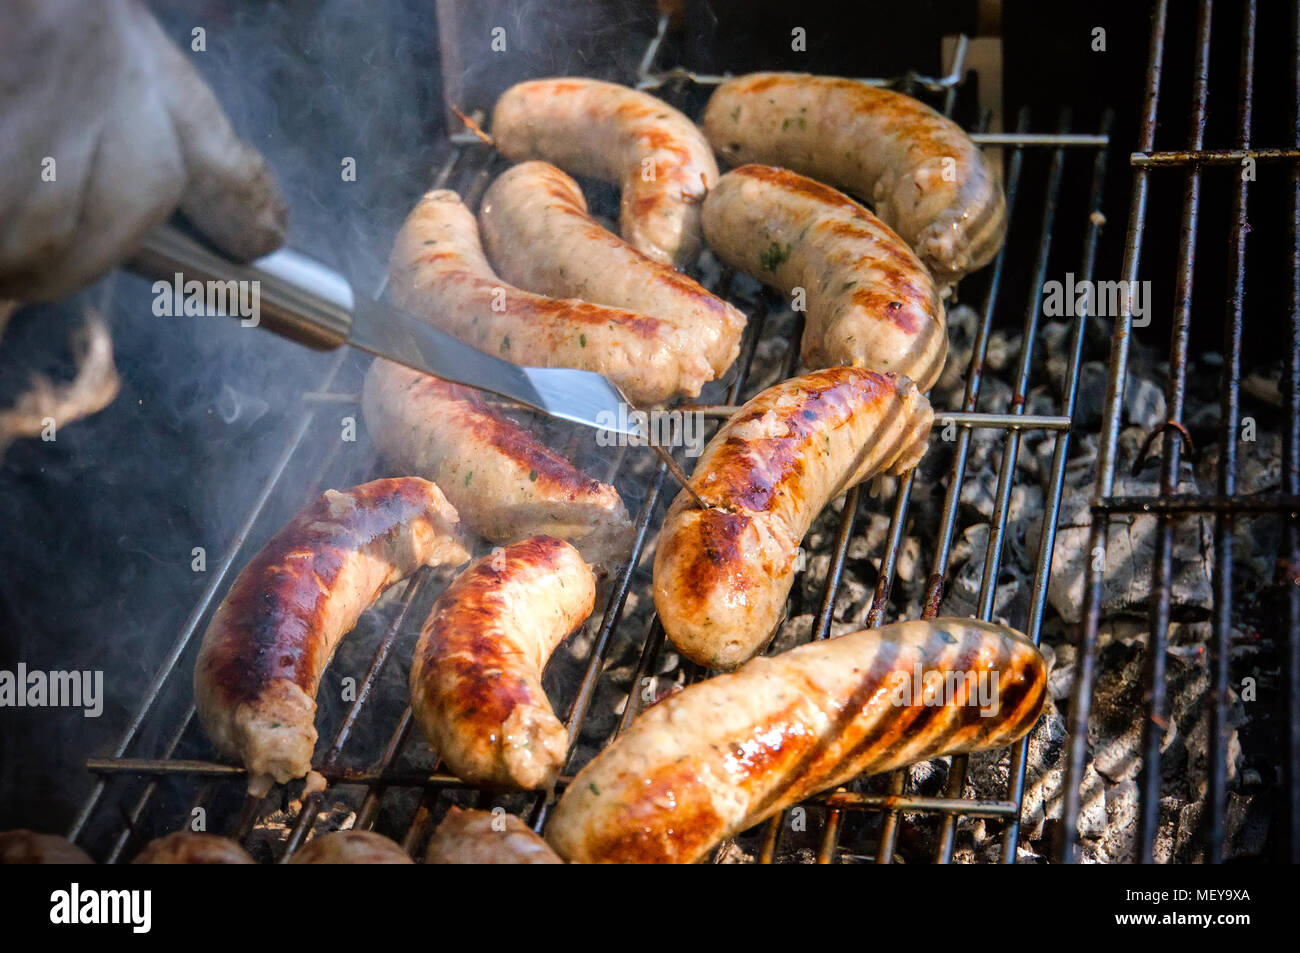 Frische Wurst. Heiße Hunde Grillen im Freien auf ein Gas Grill. Männliche  flips gegrillte Würstchen Kochen auf offenem Feuer Stockfotografie - Alamy